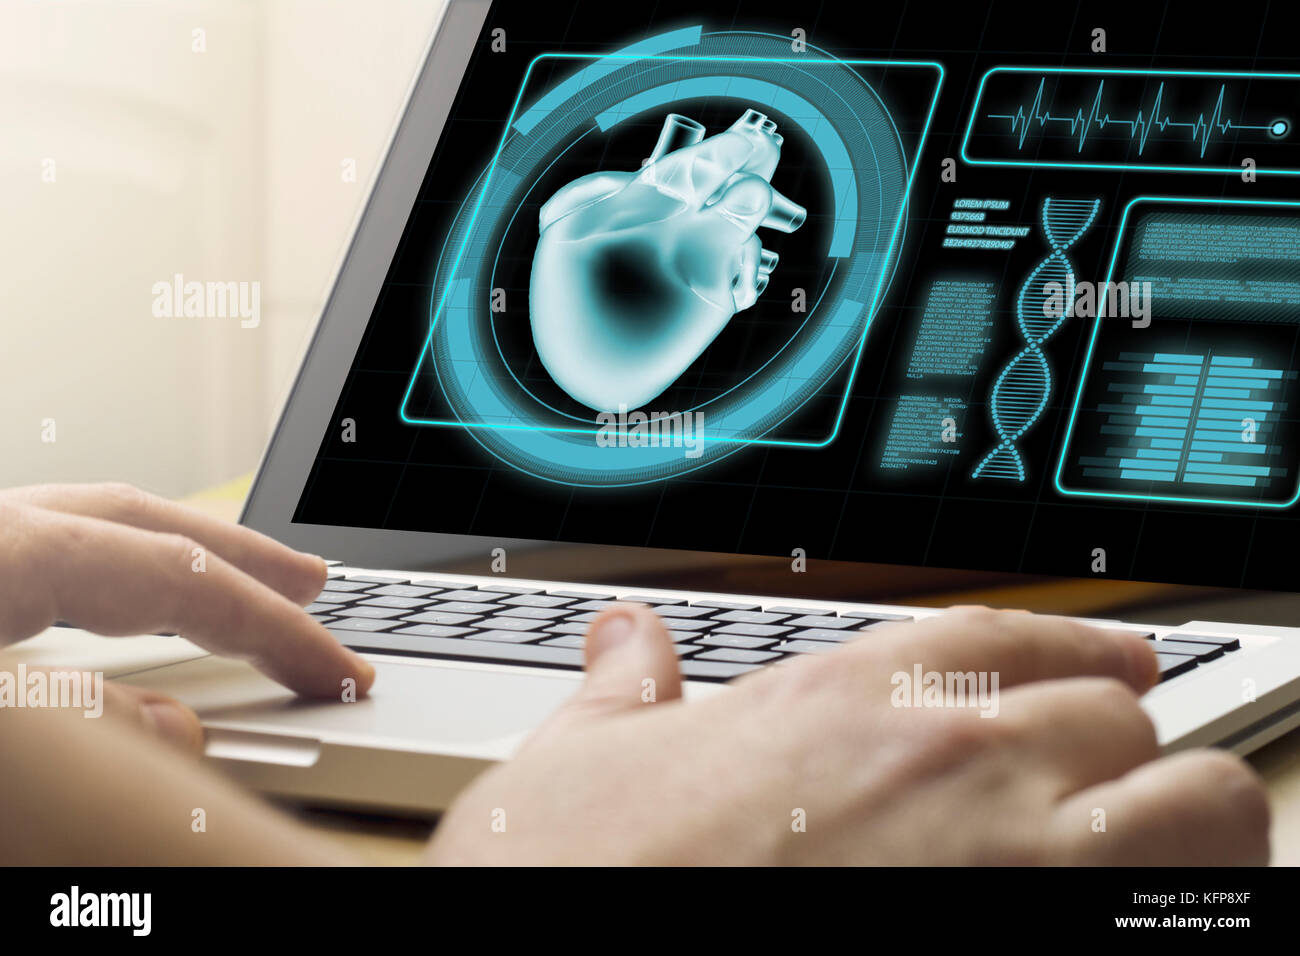 Concetto medico: un uomo che sta utilizzando un computer portatile con il software medico sullo schermo. i grafici dello schermo sono costituiti. Foto Stock